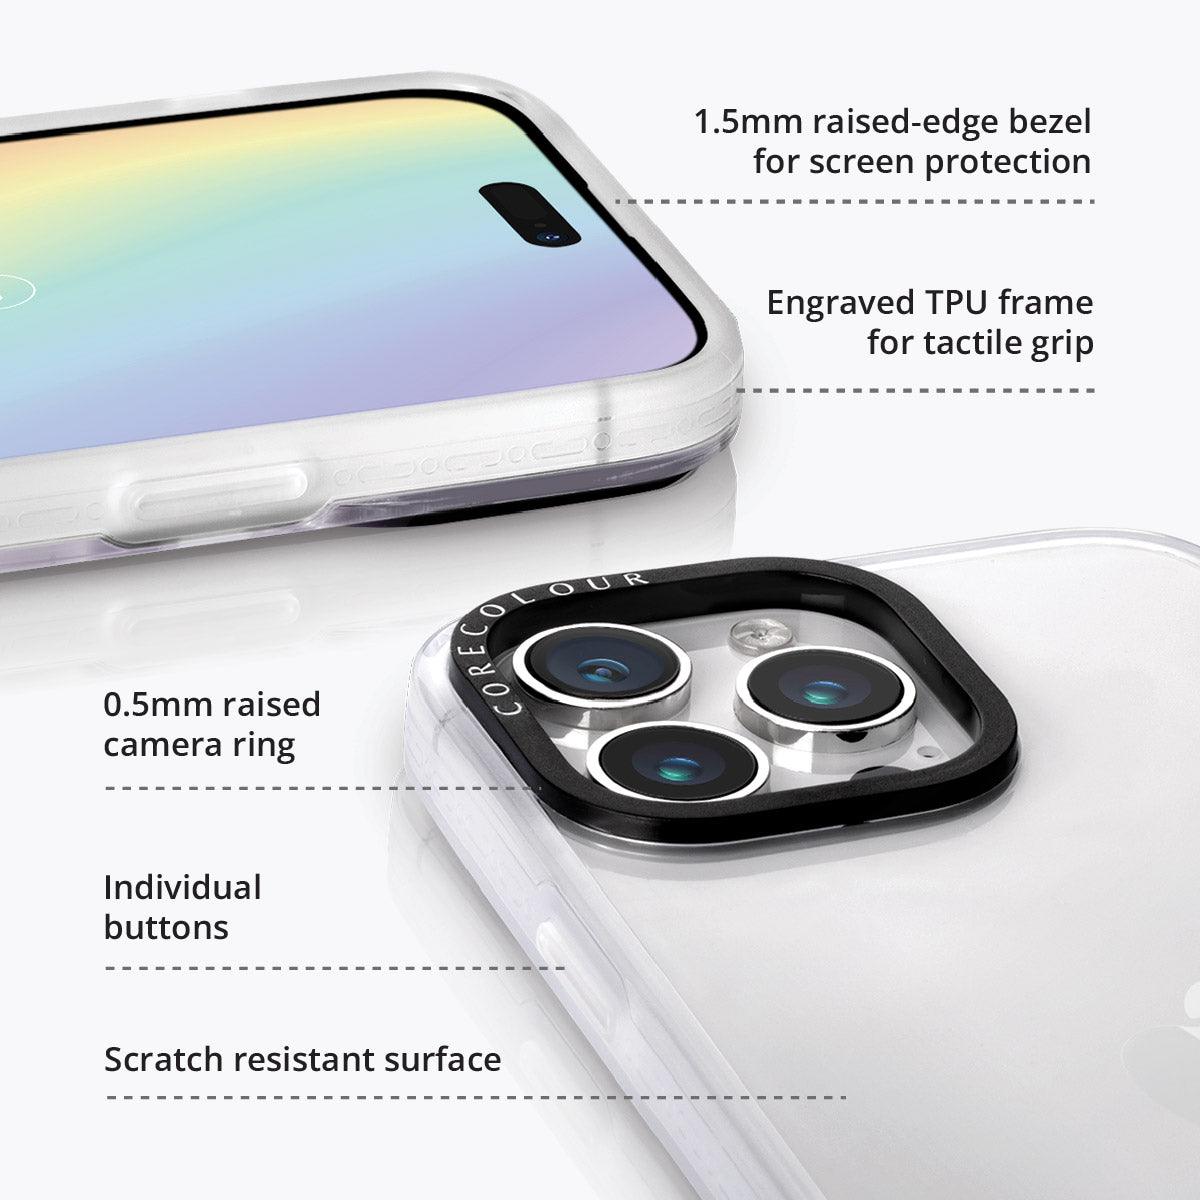 iPhone 14 Pro Max Rainy Pastel Phone Case - CORECOLOUR AU